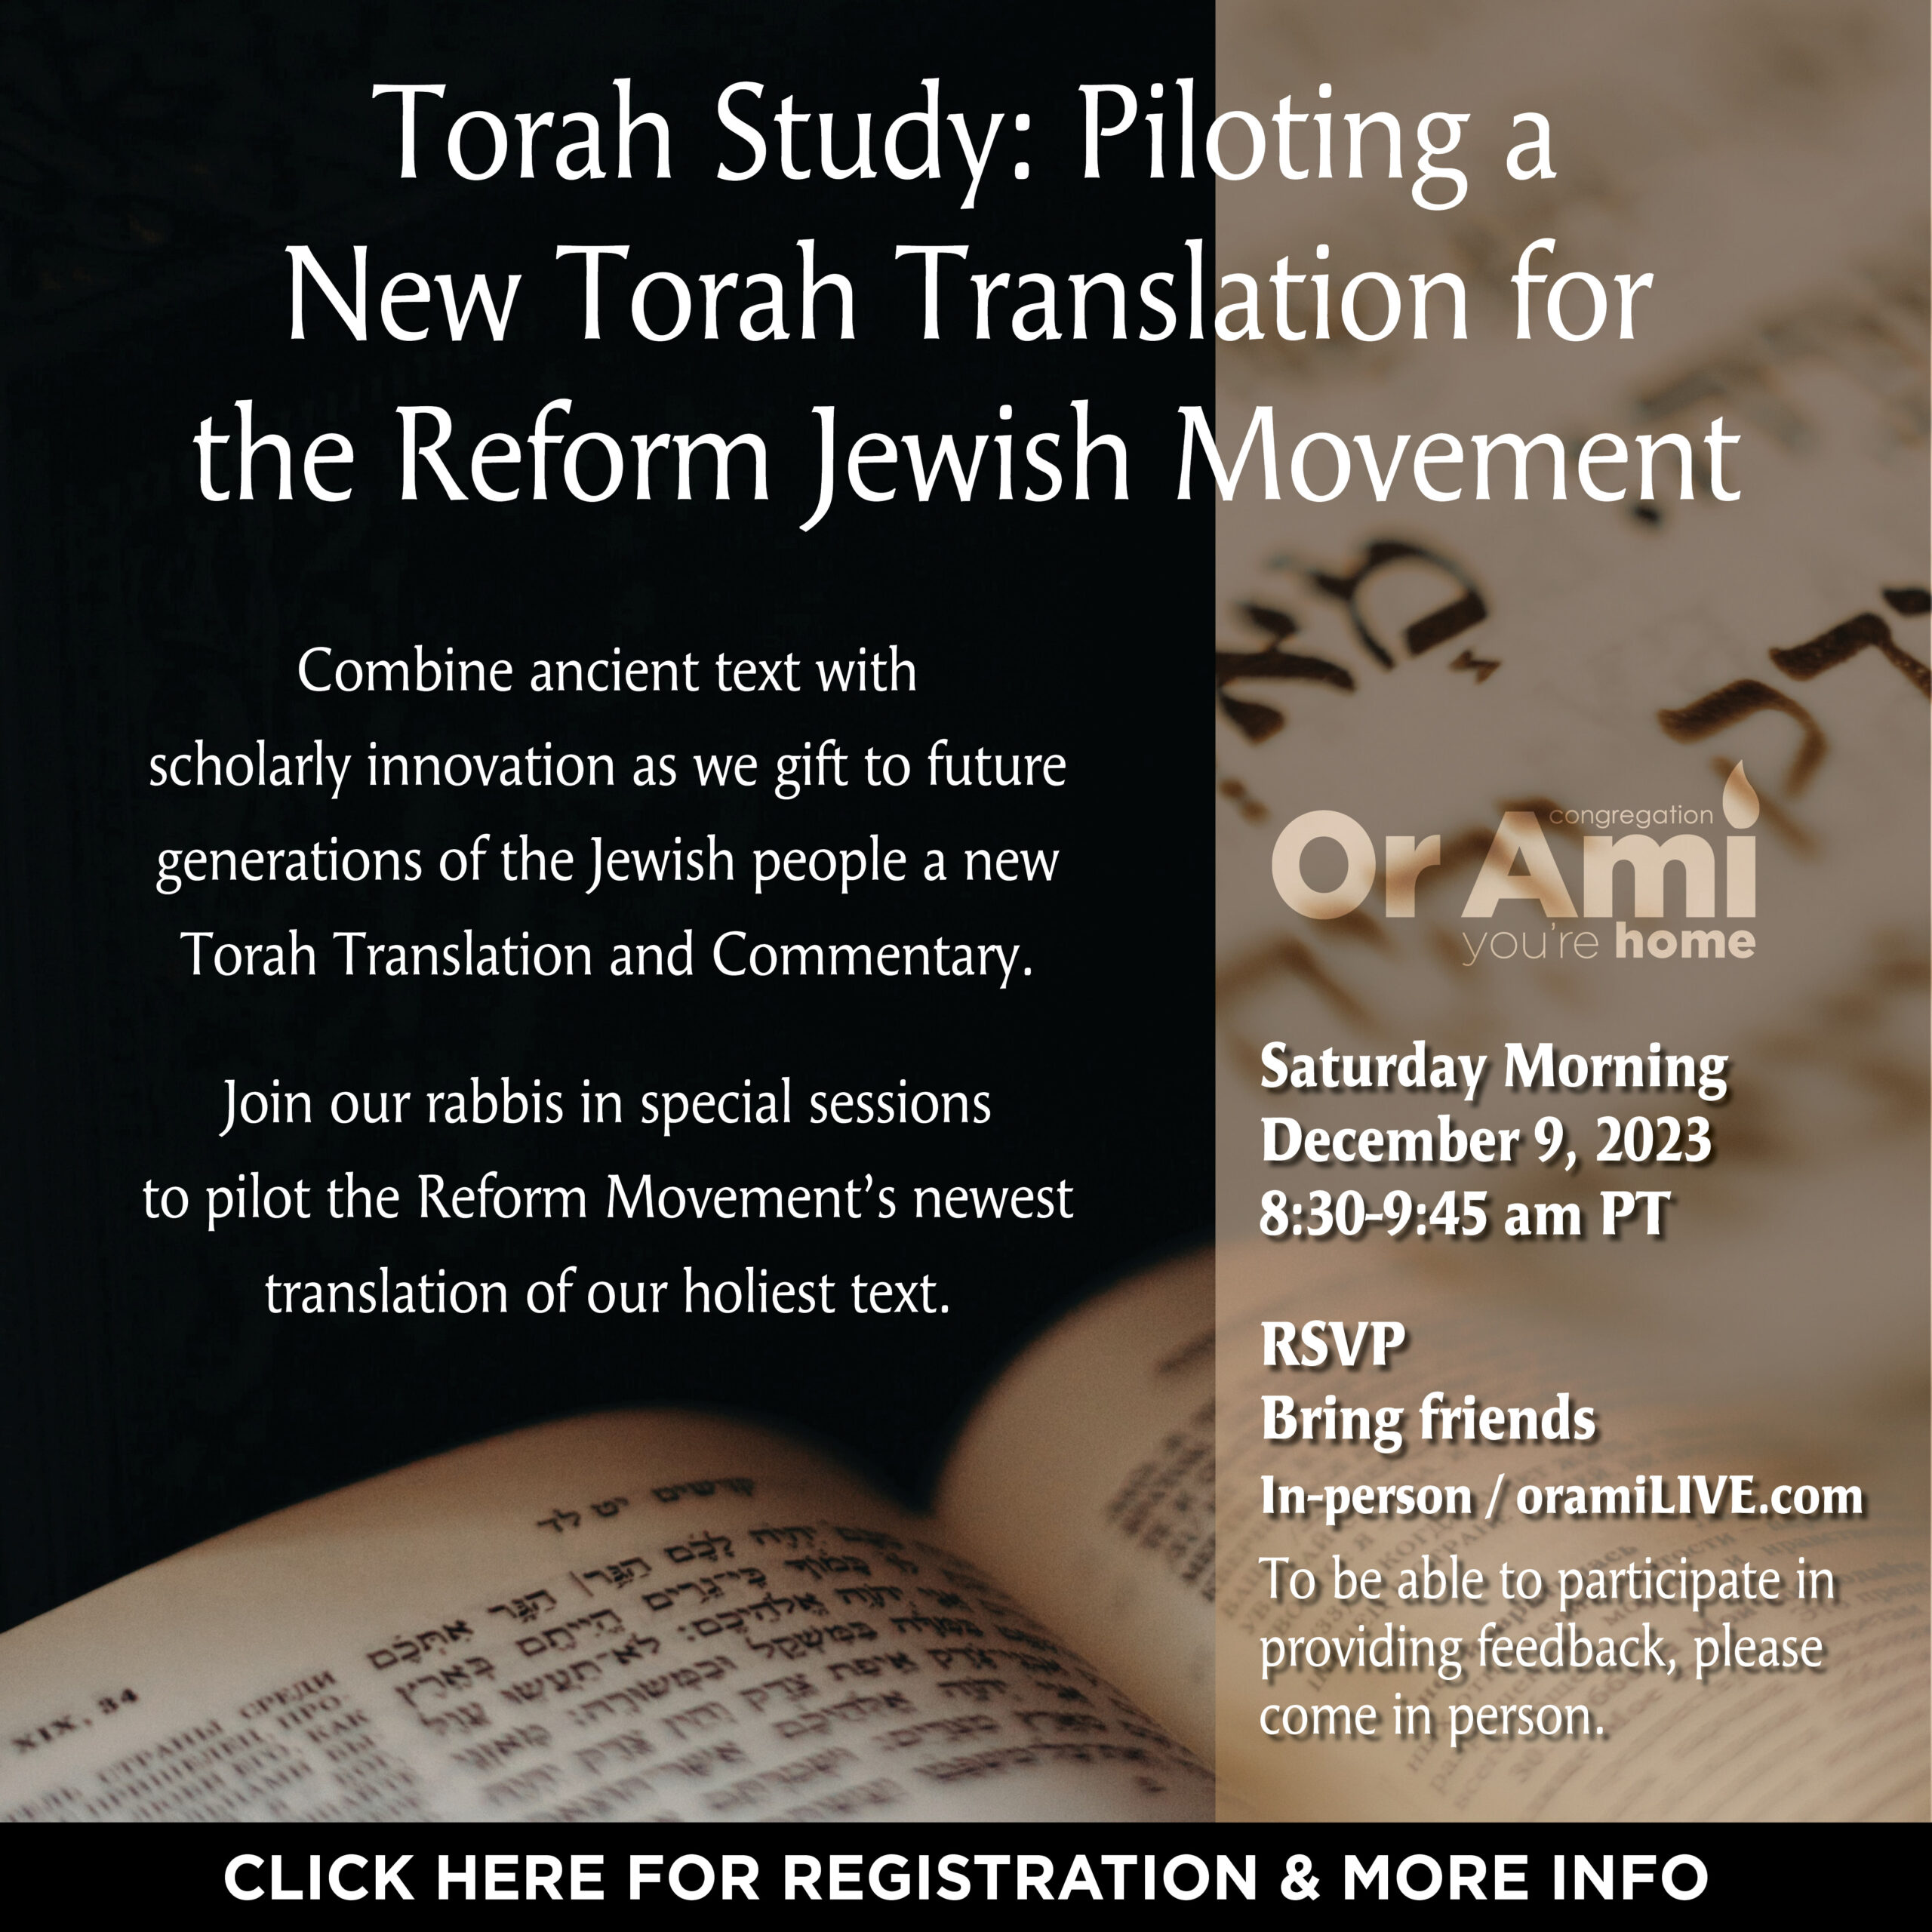 *Or Ami Torah Study- Piloting a New Torah Translation CLICK 12:9